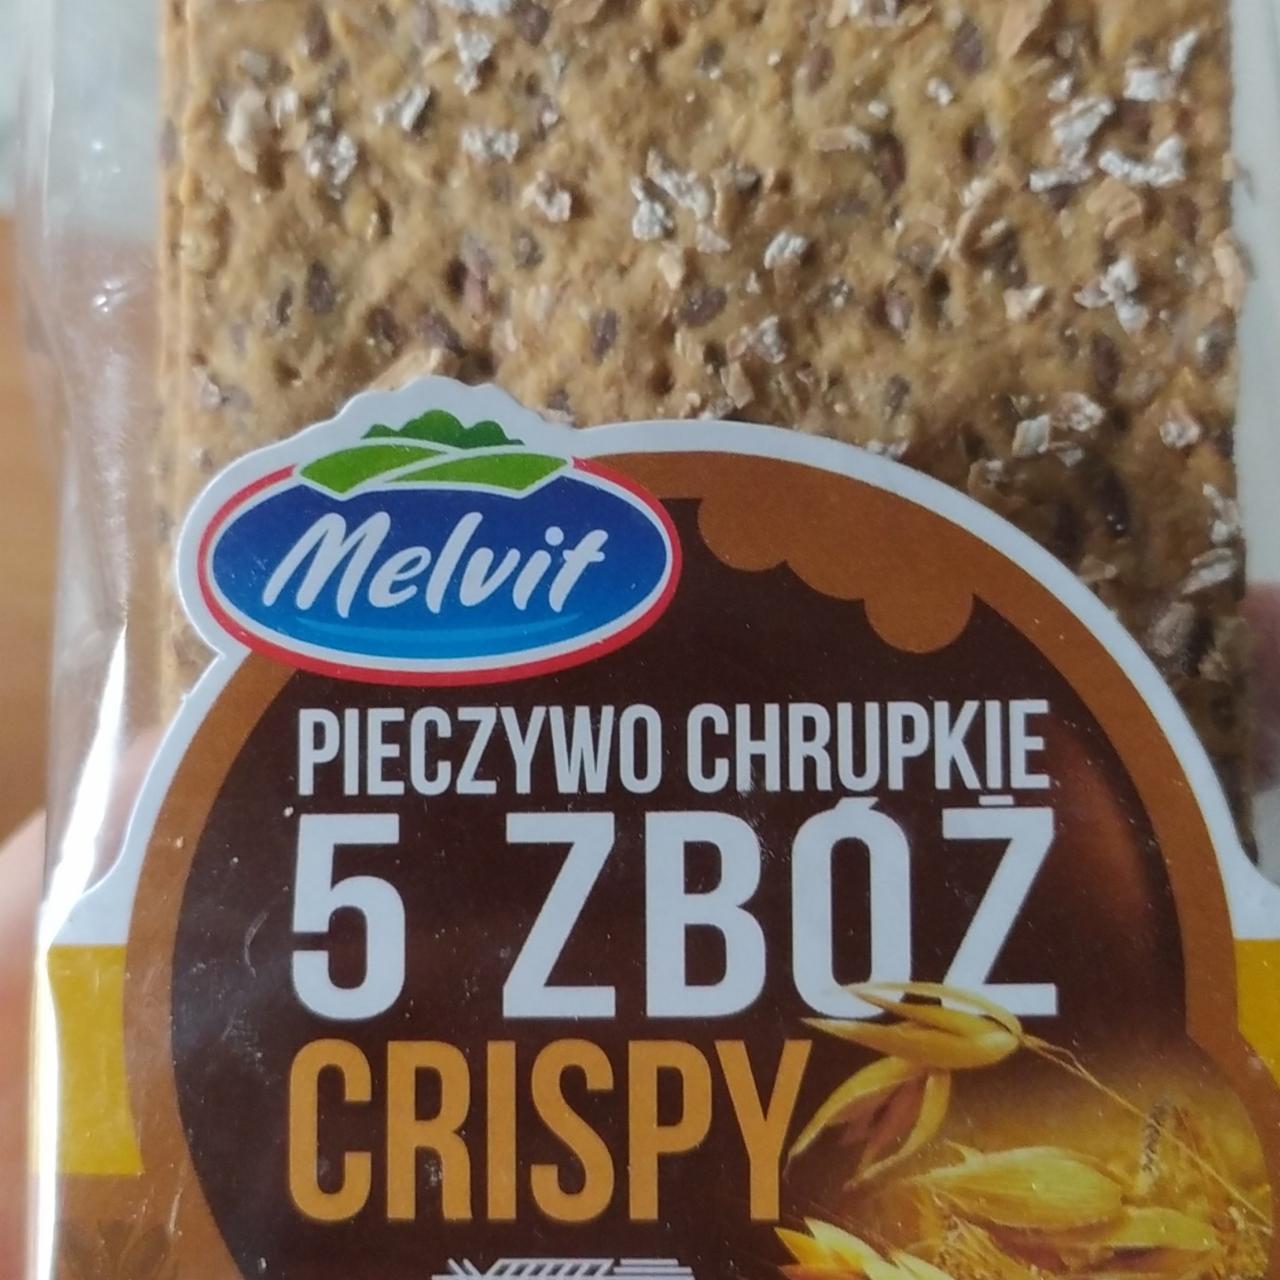 Zdjęcia - Melvit Crispy Pieczywo chrupkie 5 zbóż 130 g